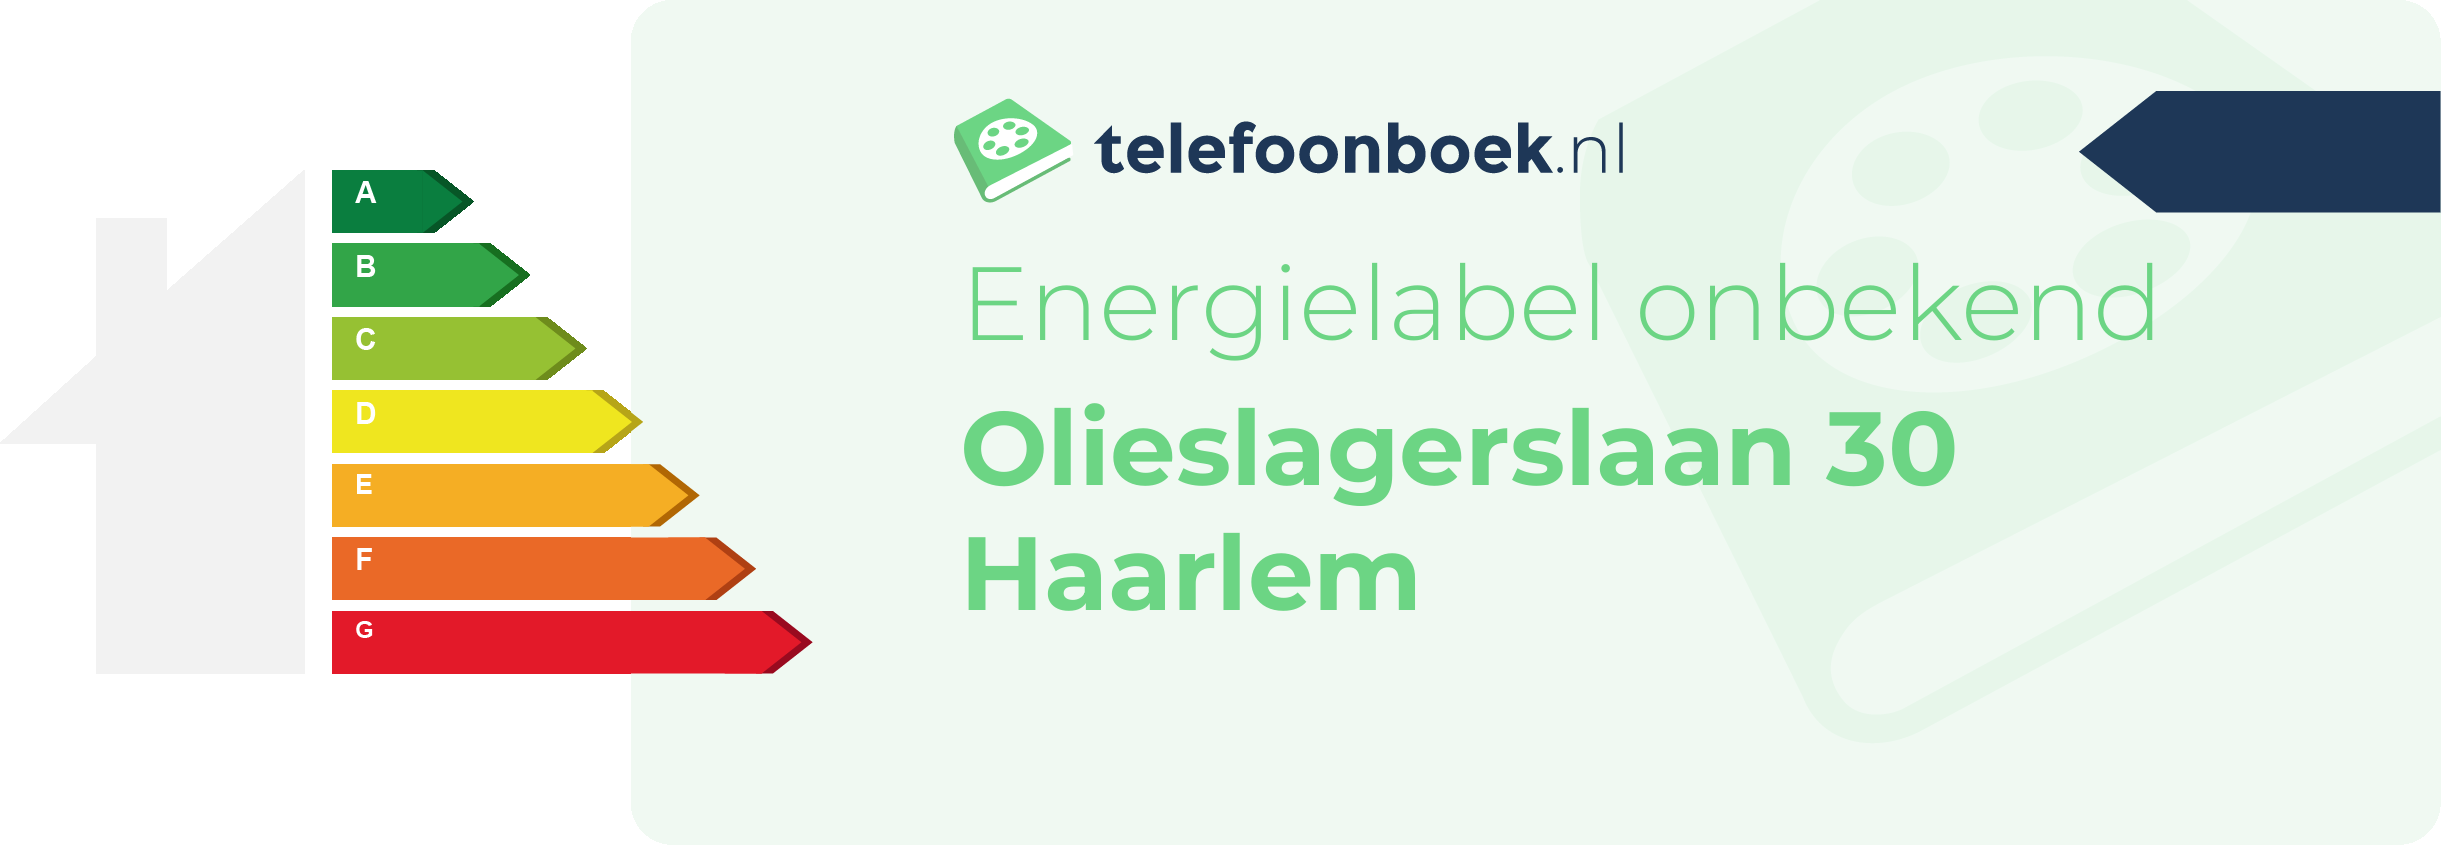 Energielabel Olieslagerslaan 30 Haarlem